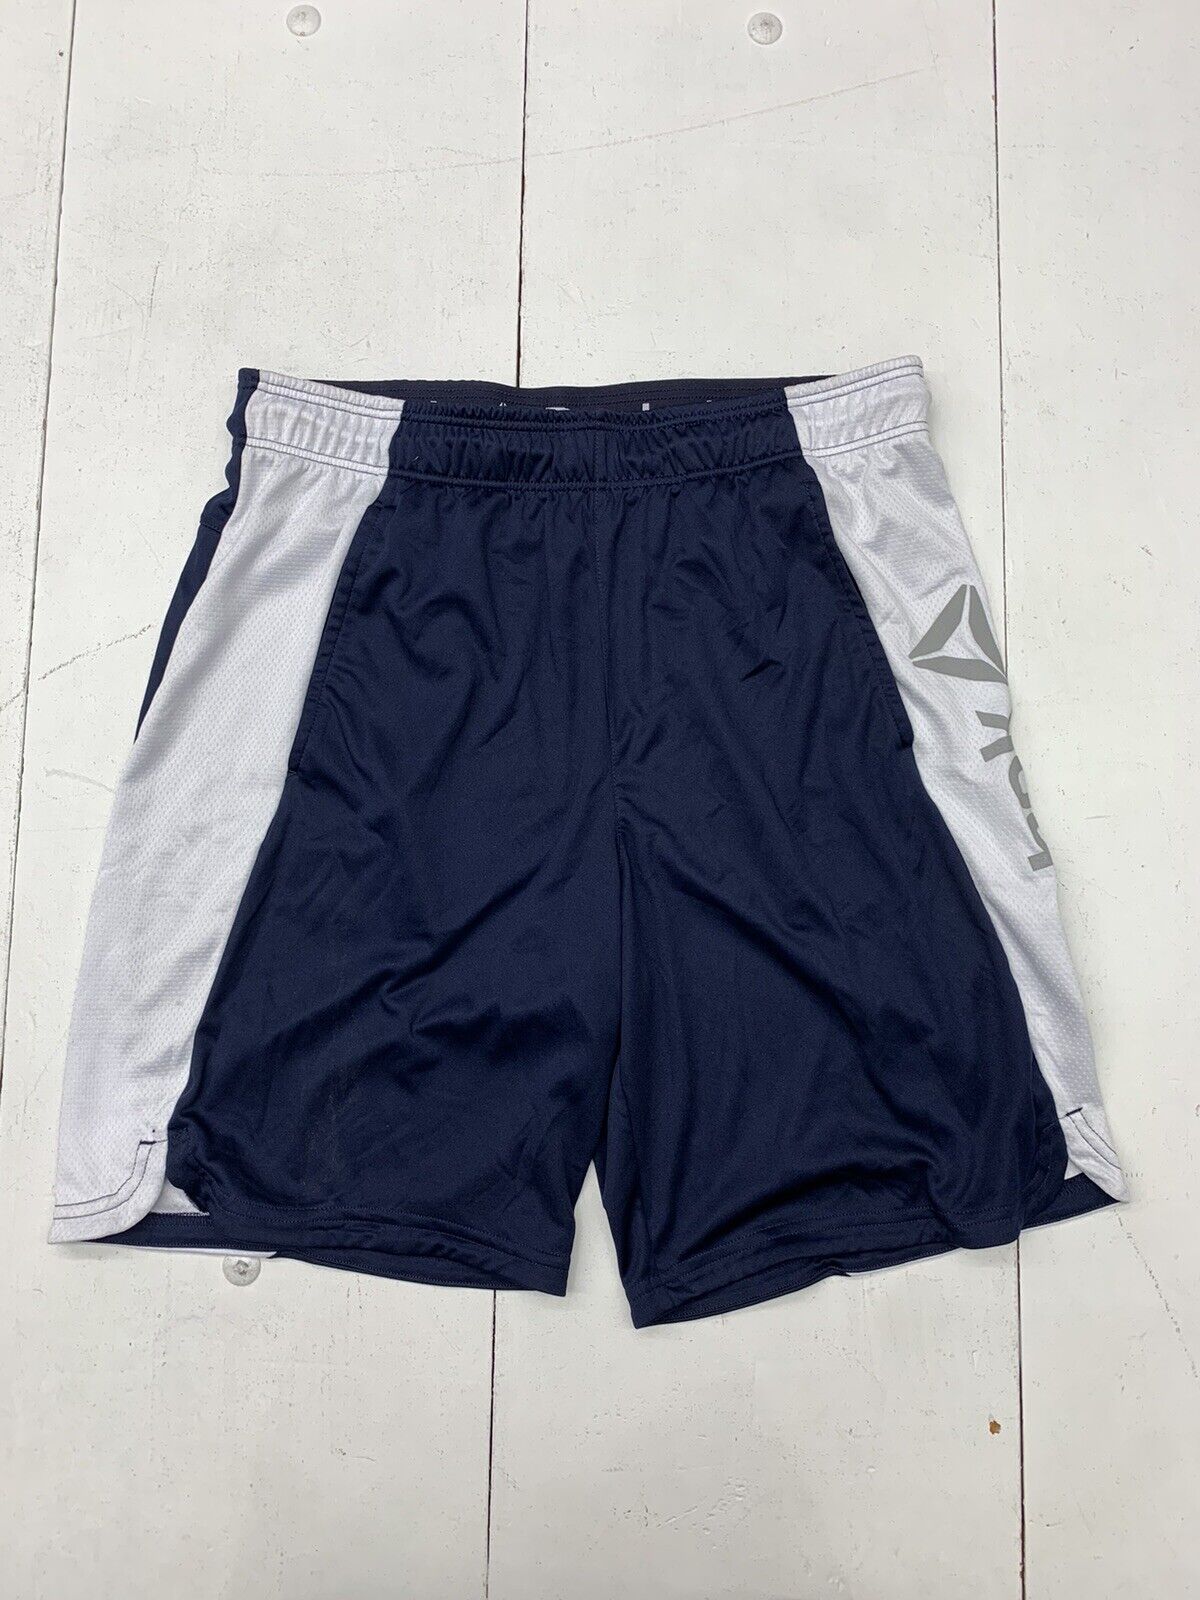 Reebok Mens Size Blue exchange - Shorts Large Dark beyond Athletic